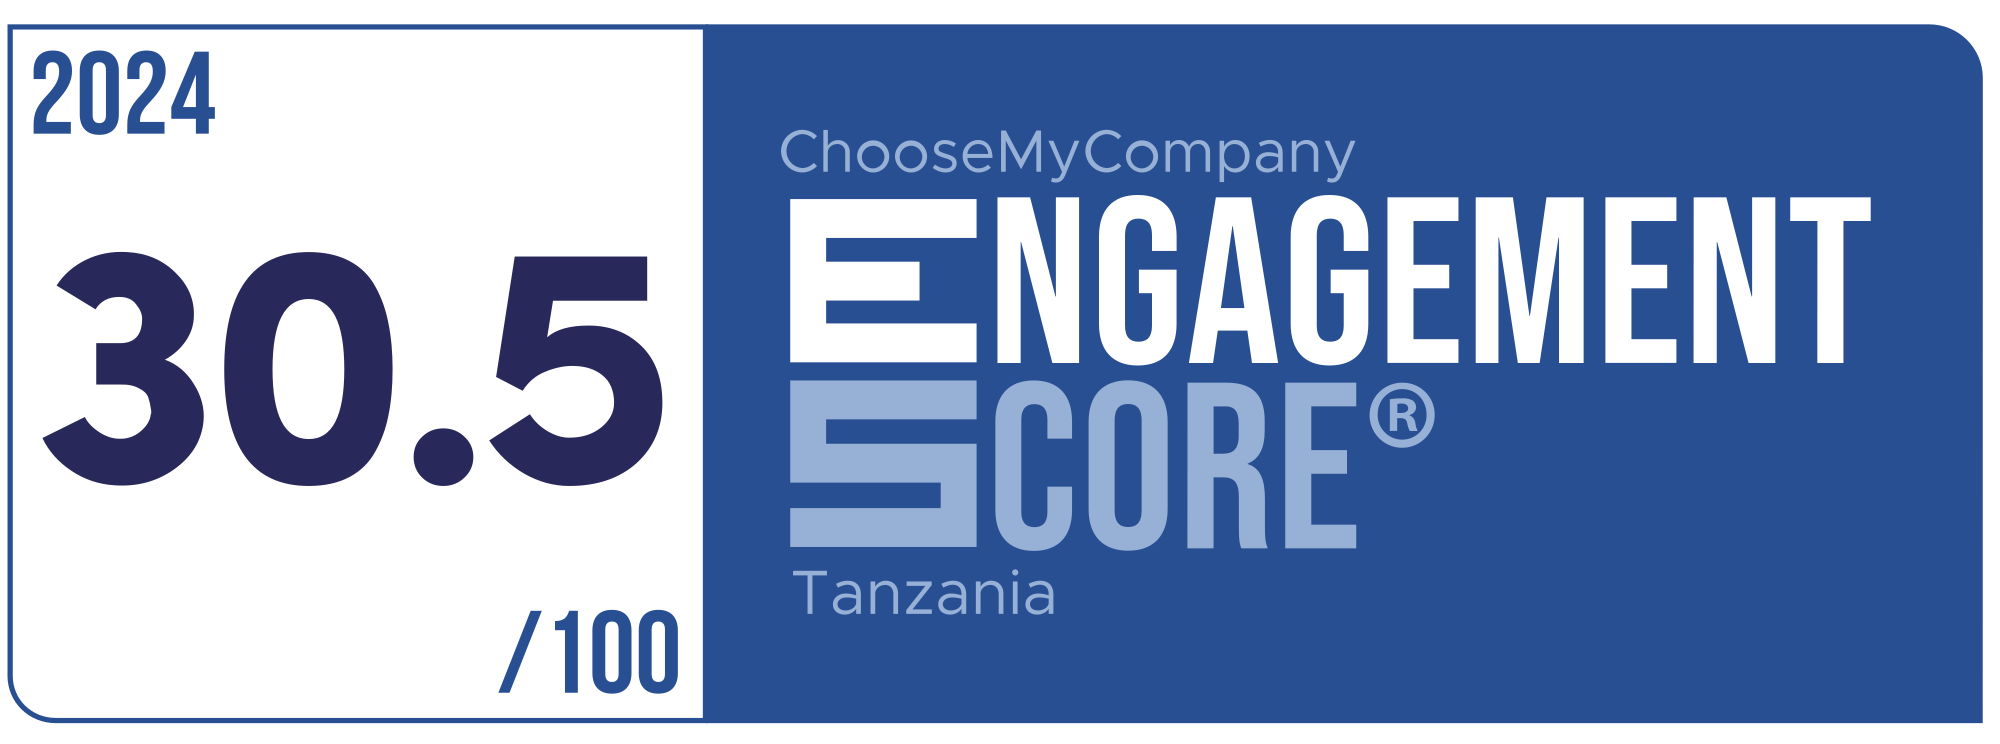 Label Engagement Score 2024 Tanzania